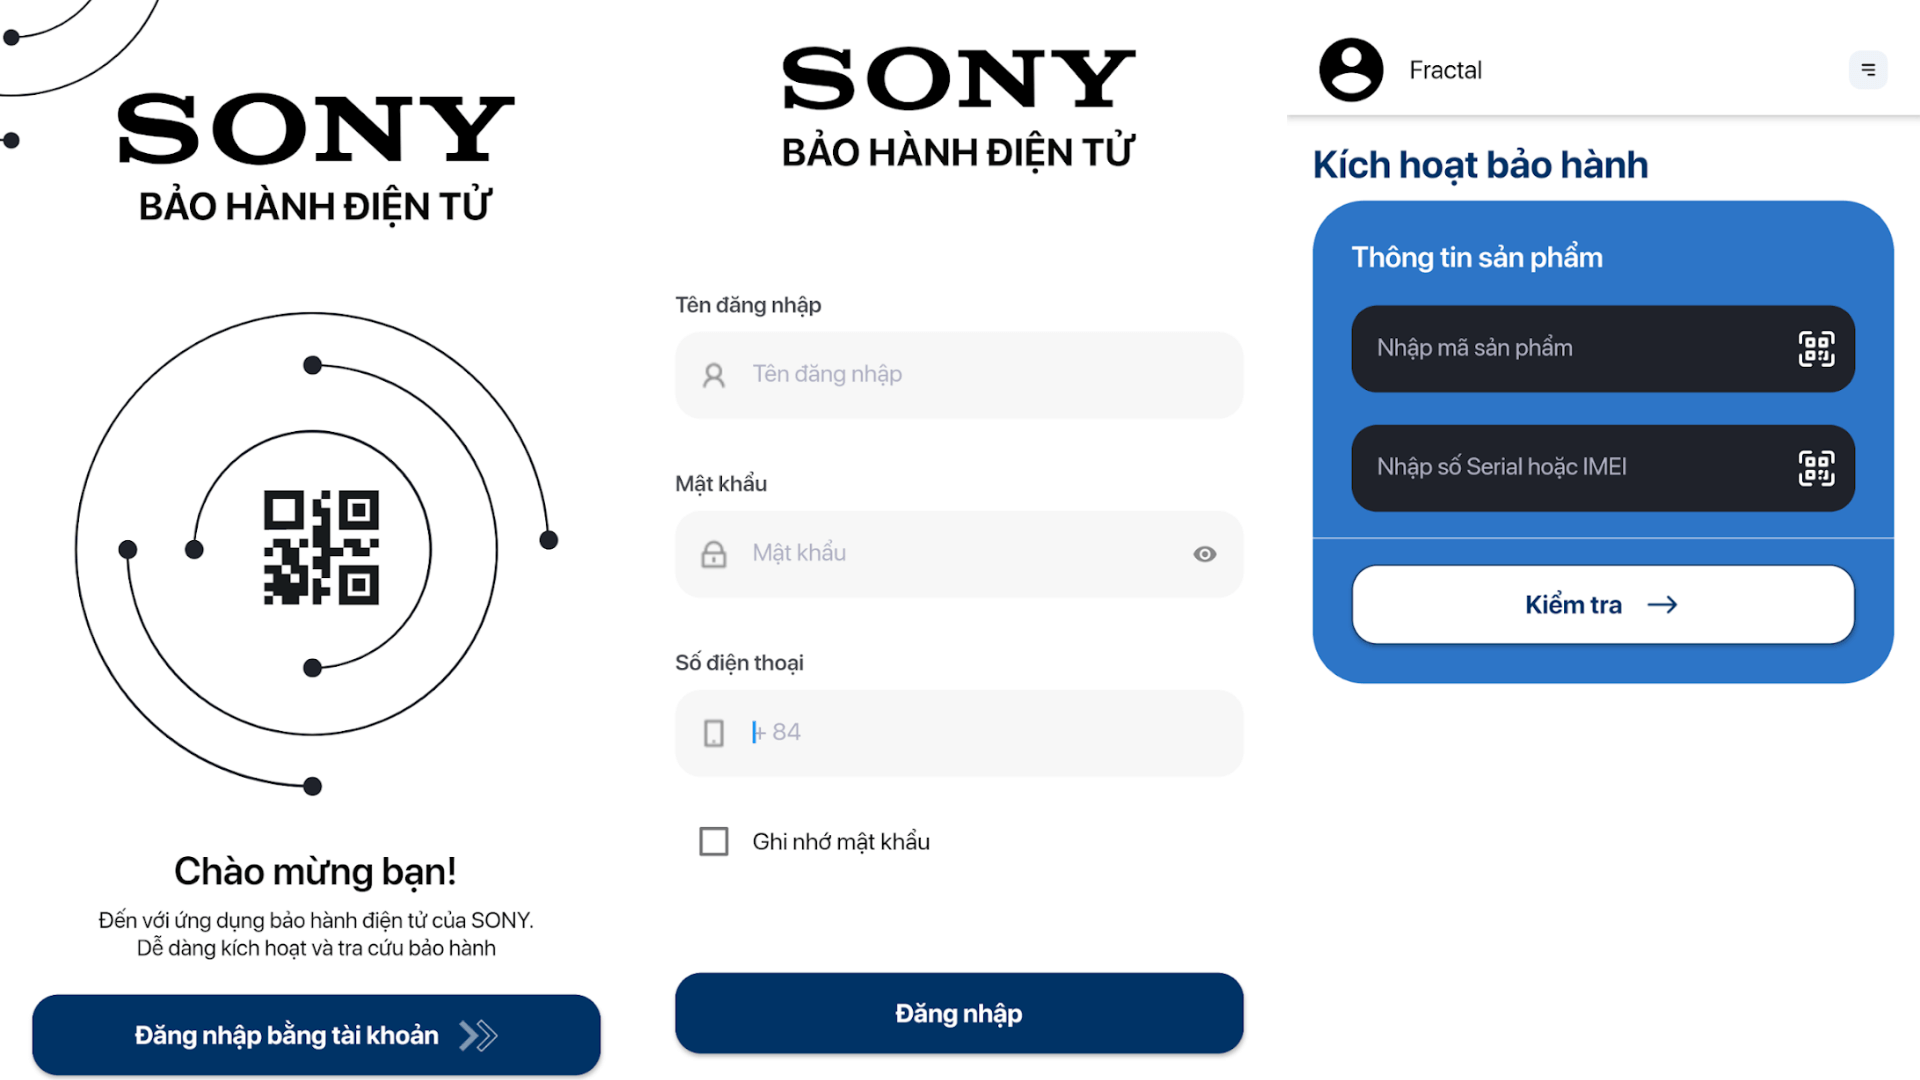 Cách kích hoạt bảo hành điện tử cho tivi Sony